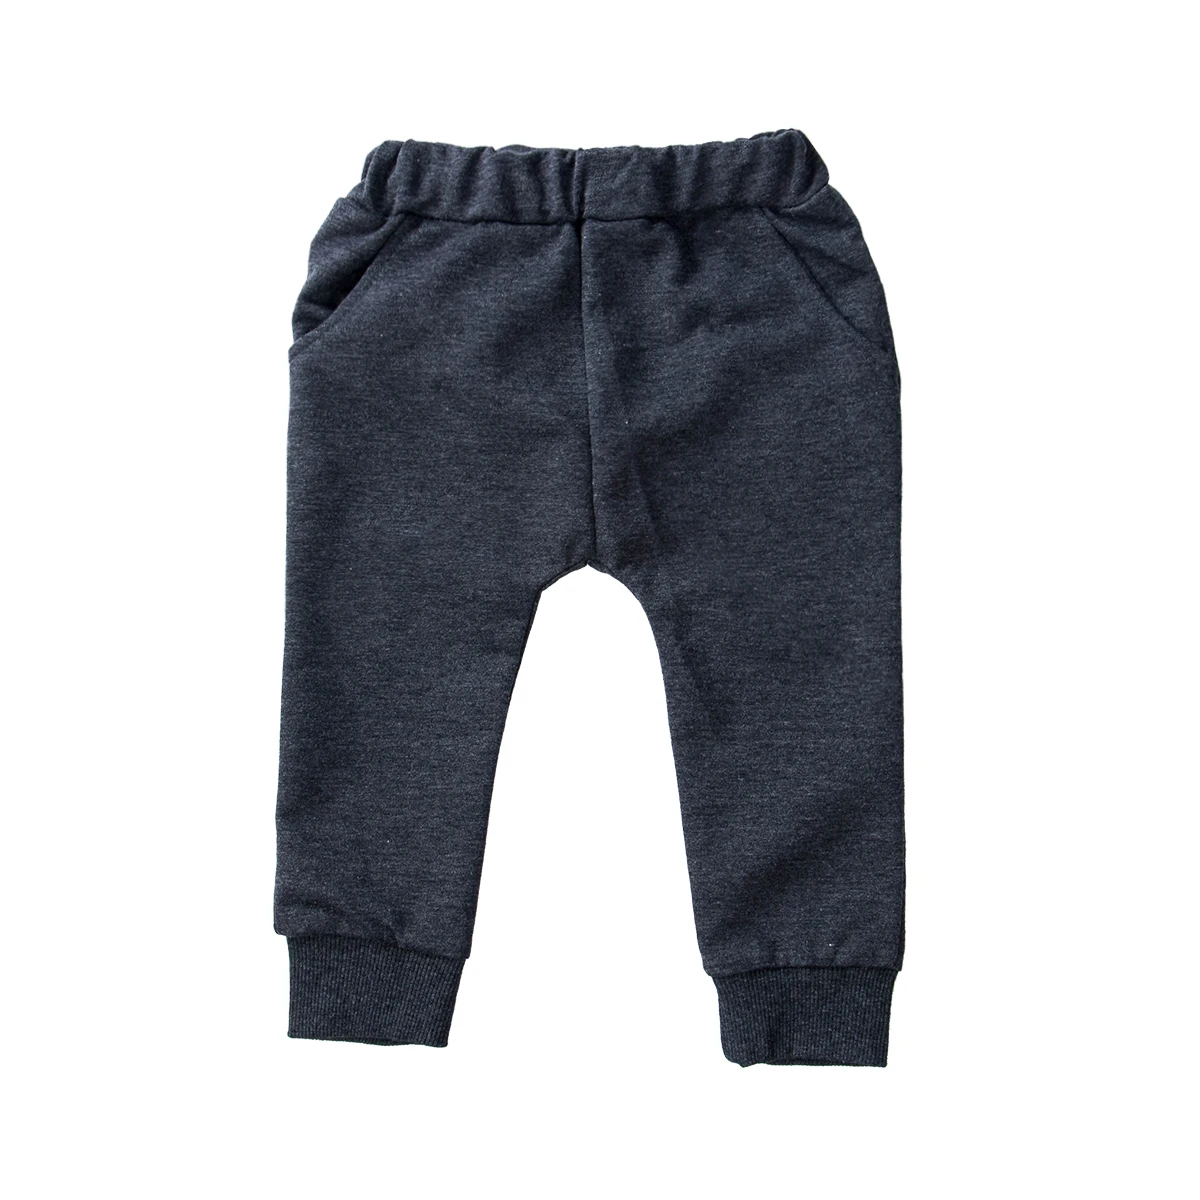 Длинные штаны с принтом «Большая пасть чудовища» для маленьких мальчиков леггинсы джогги брюки для маленьких мальчиков хлопковая мешковатая одежда для бега От 0 до 4 лет